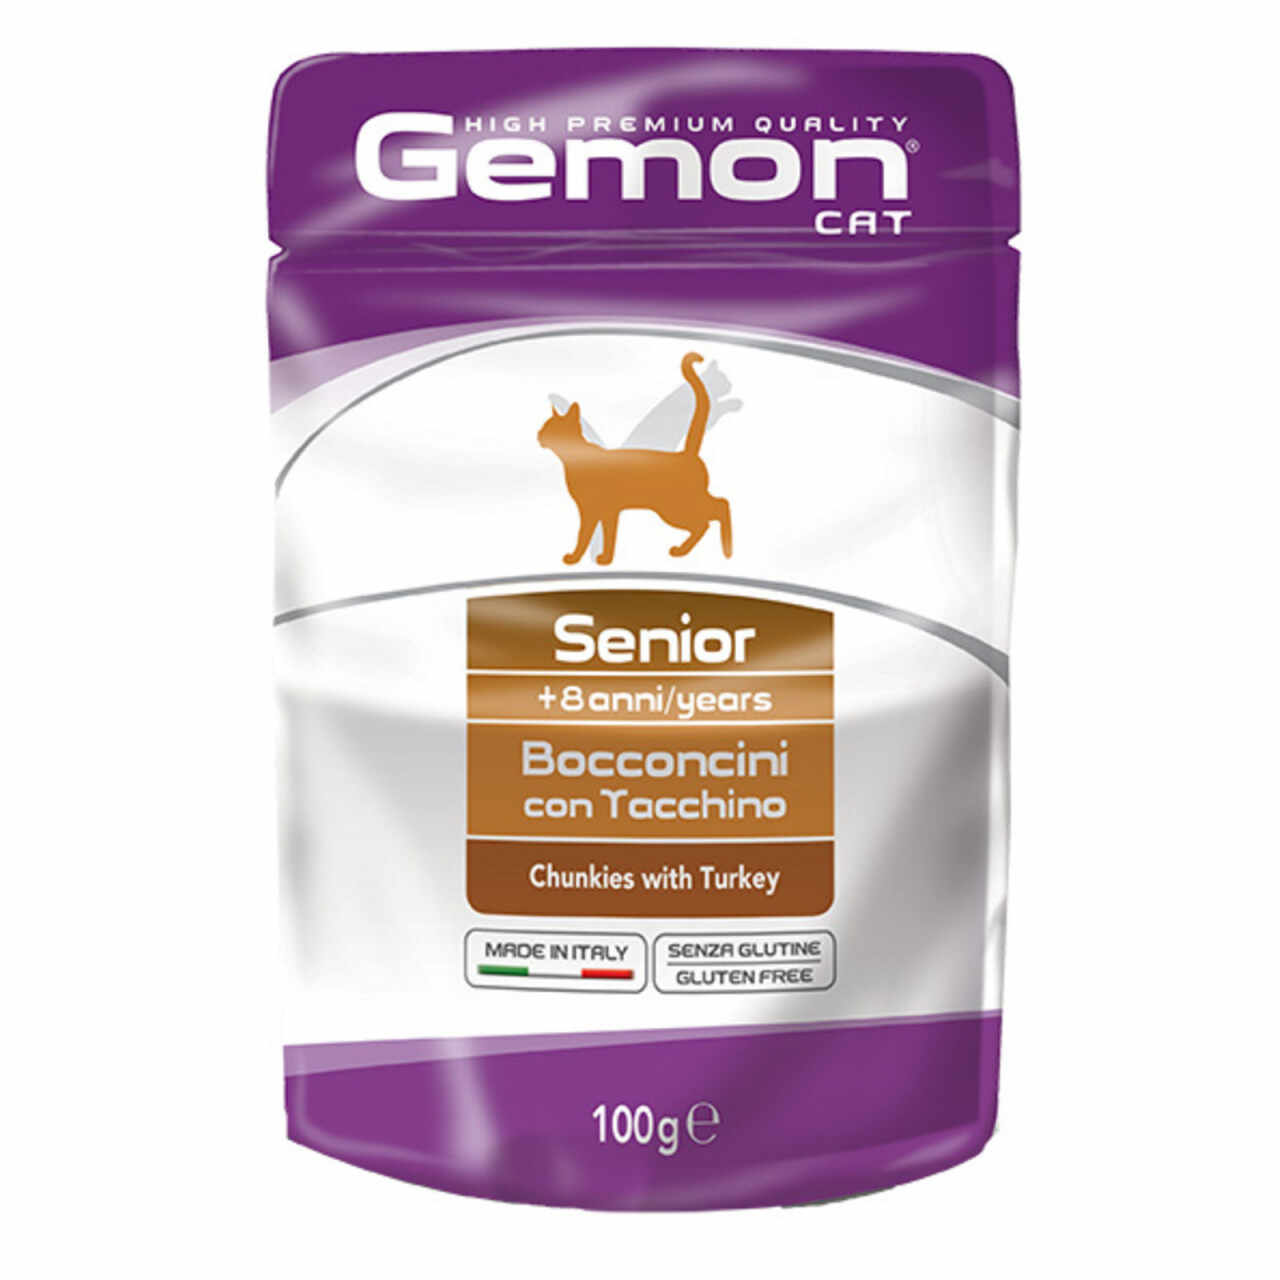 Gemon Cat 100g, Senior, Curcan